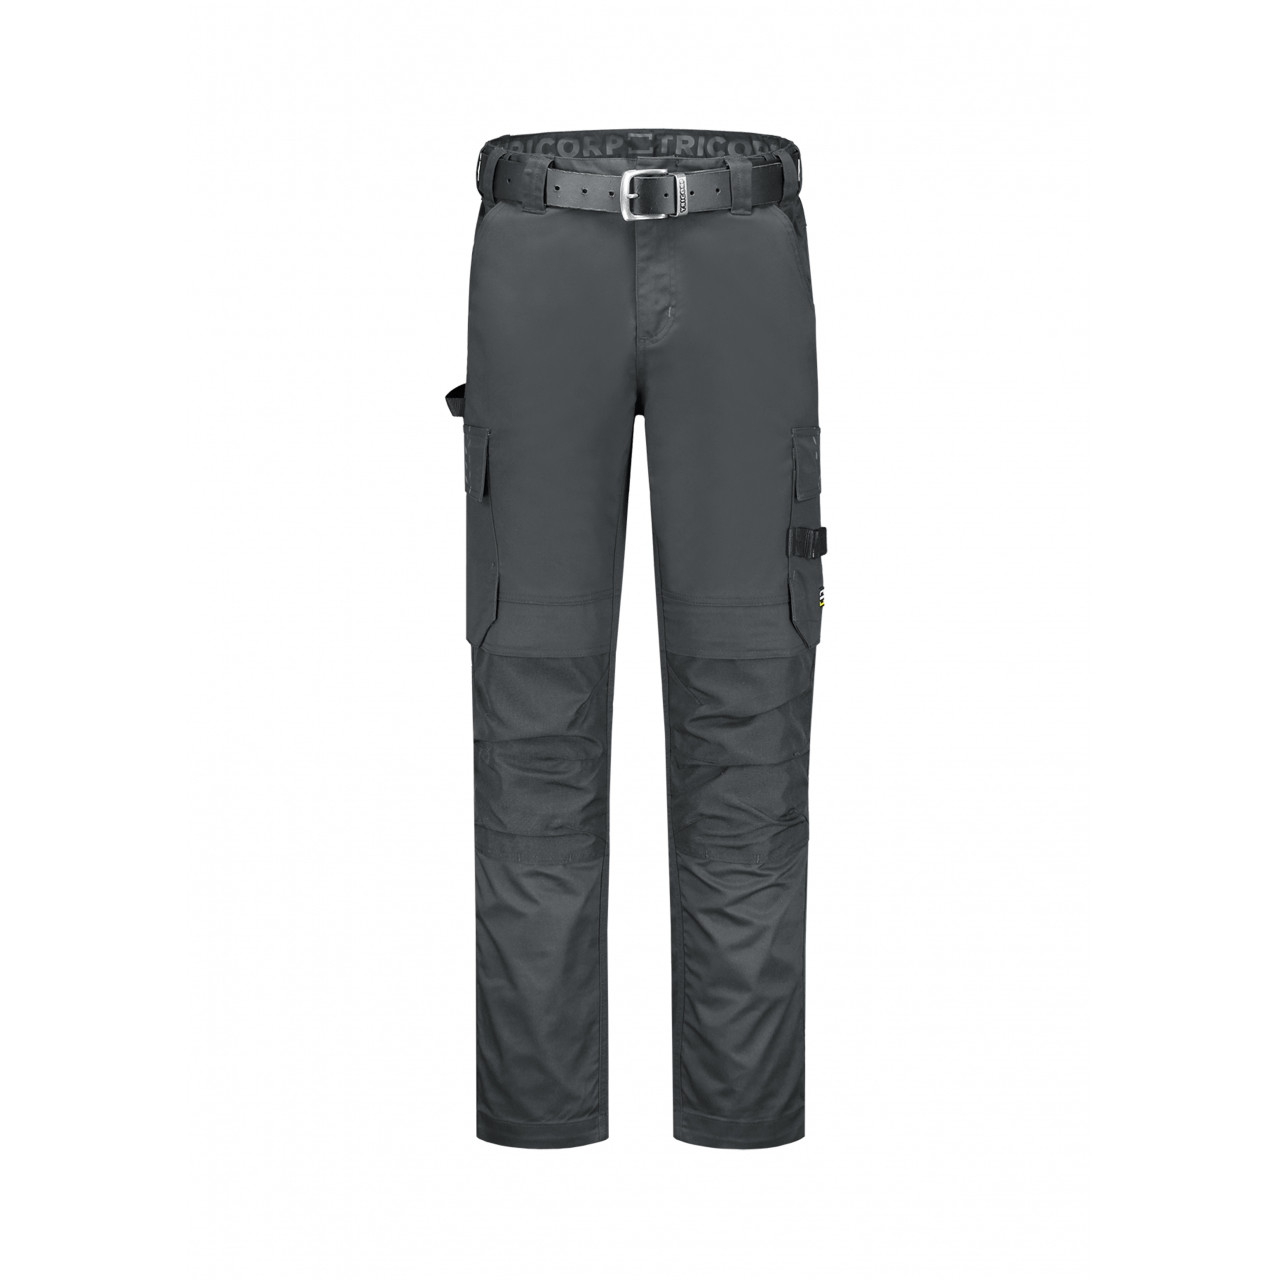 Pracovní kalhoty unisex Tricorp Work Pants Twill Cordura - tmavě šedé, 44